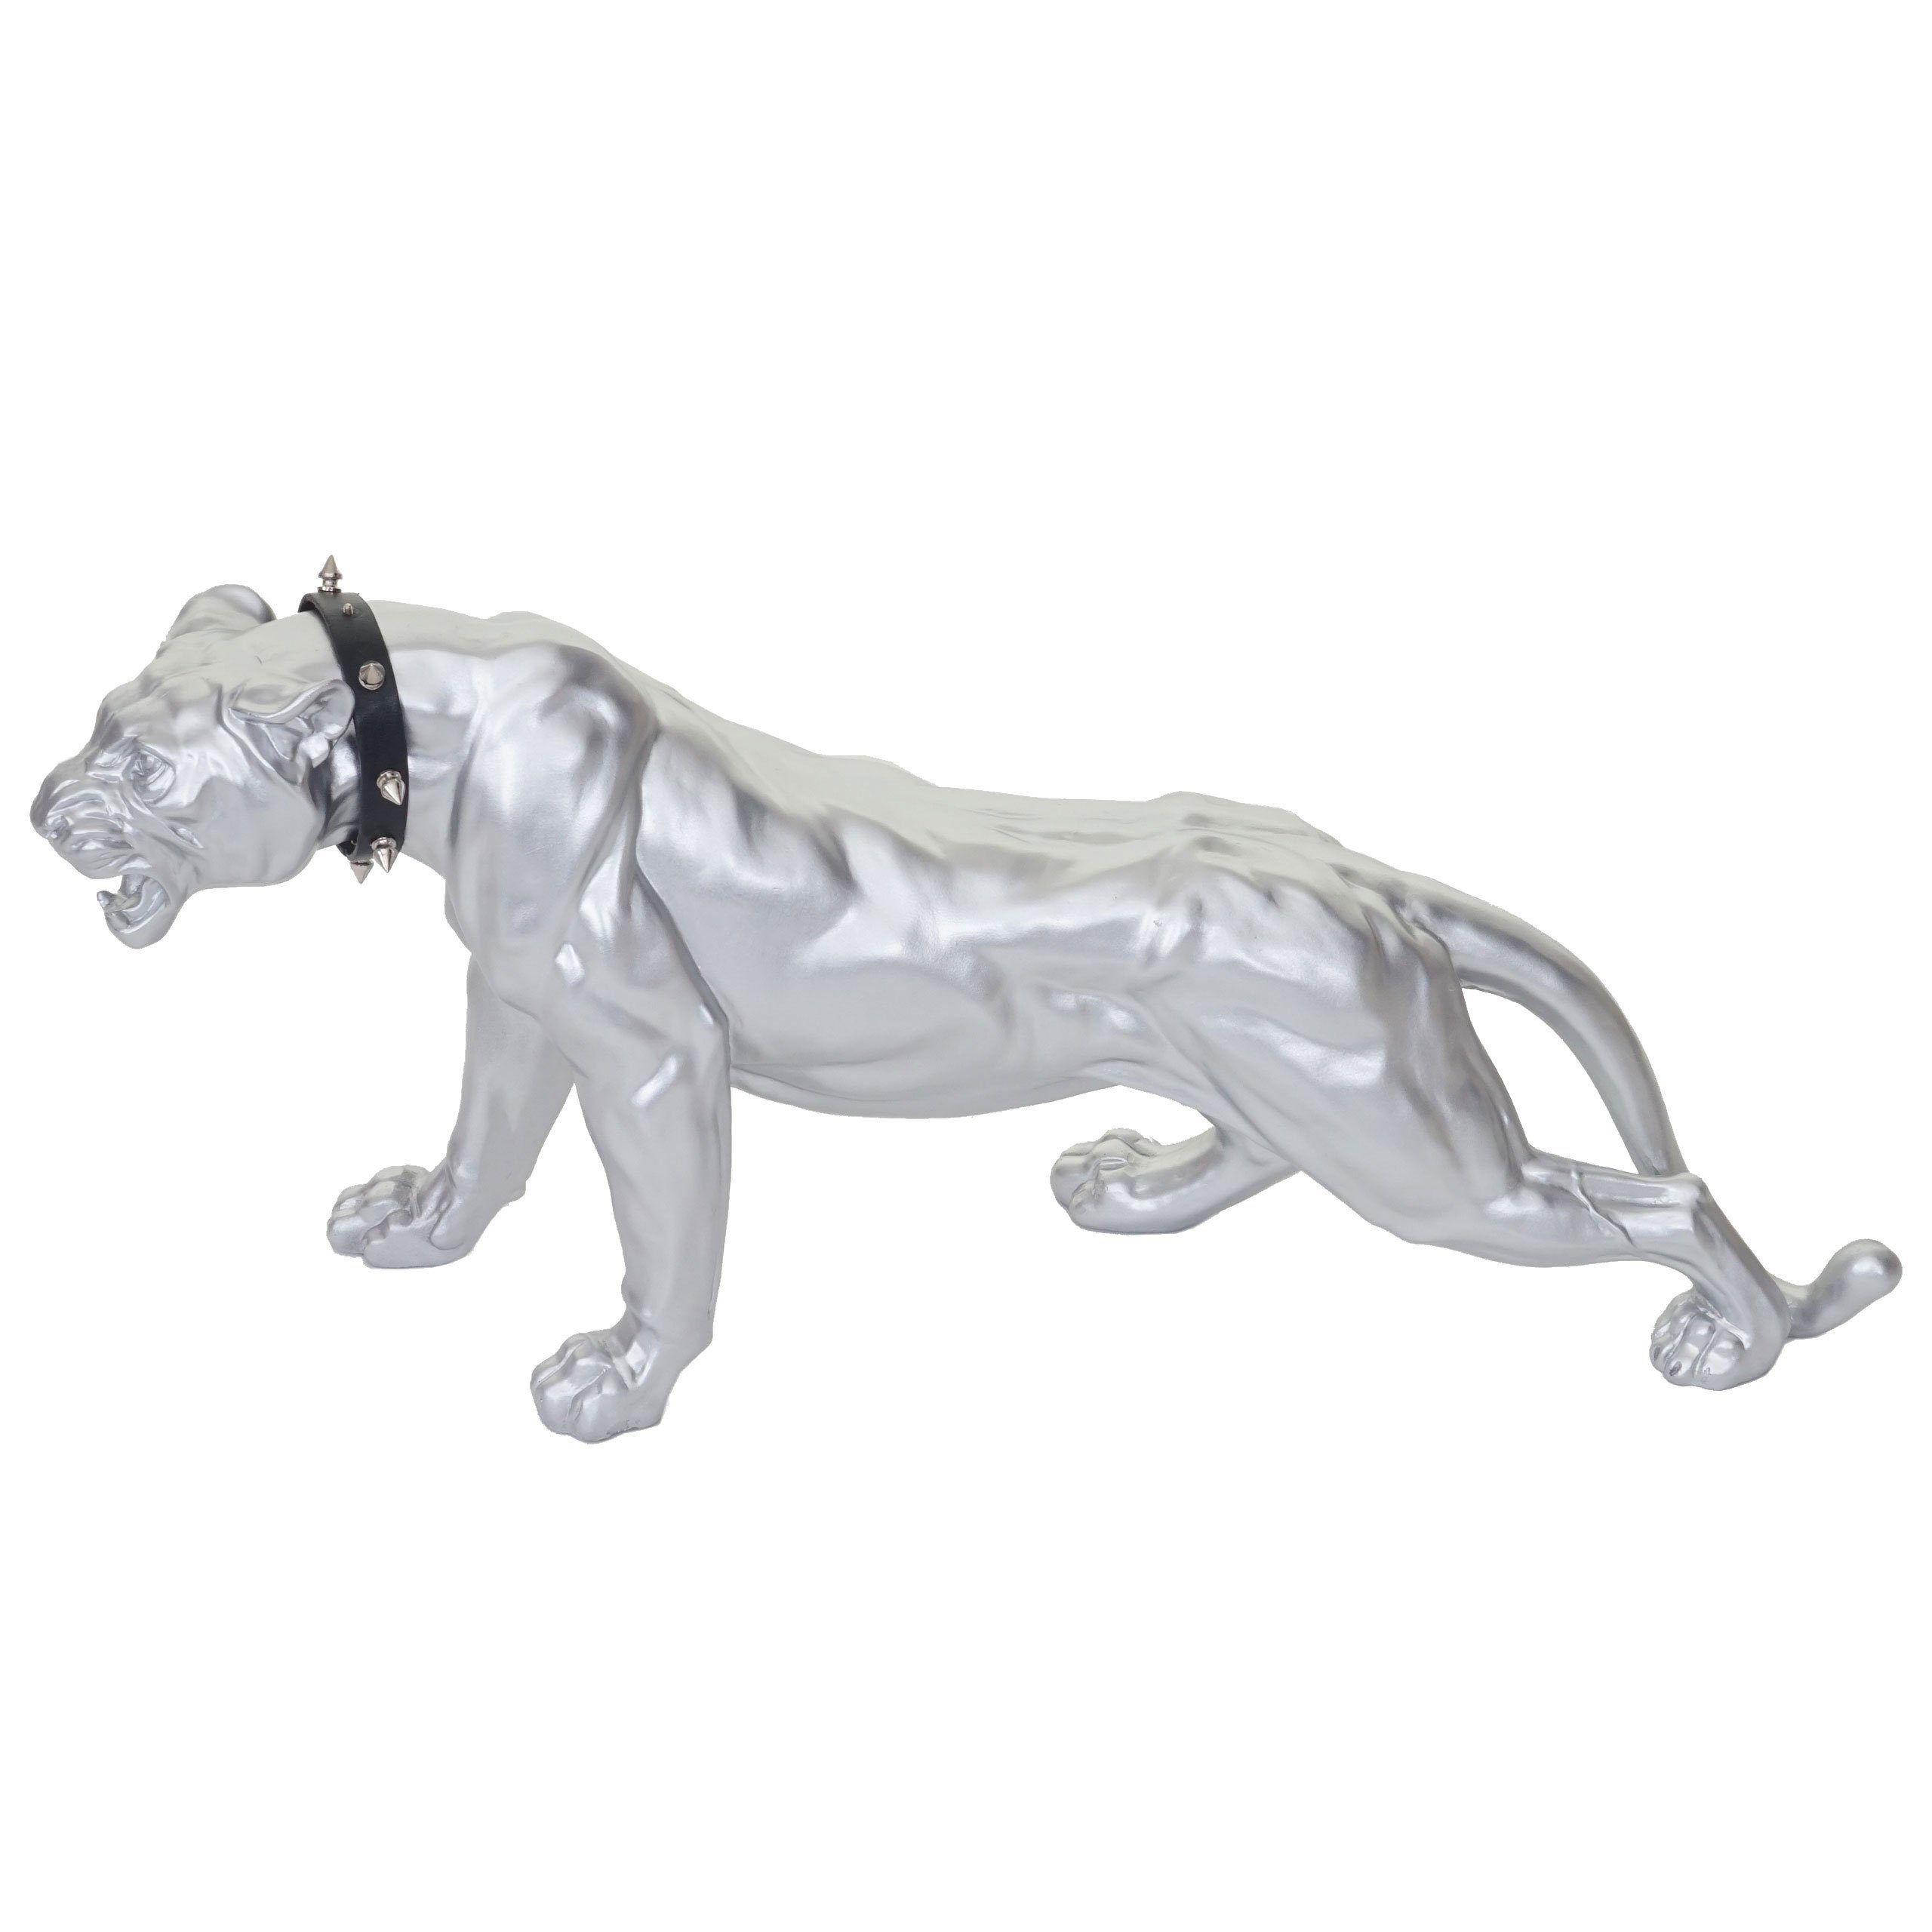 MCW Tierfigur Panther, Indoor/Outdoor-geeignet, Inkl. Halsband Witterungsbeständig, Frostbeständig bis -10° C, silberfarben